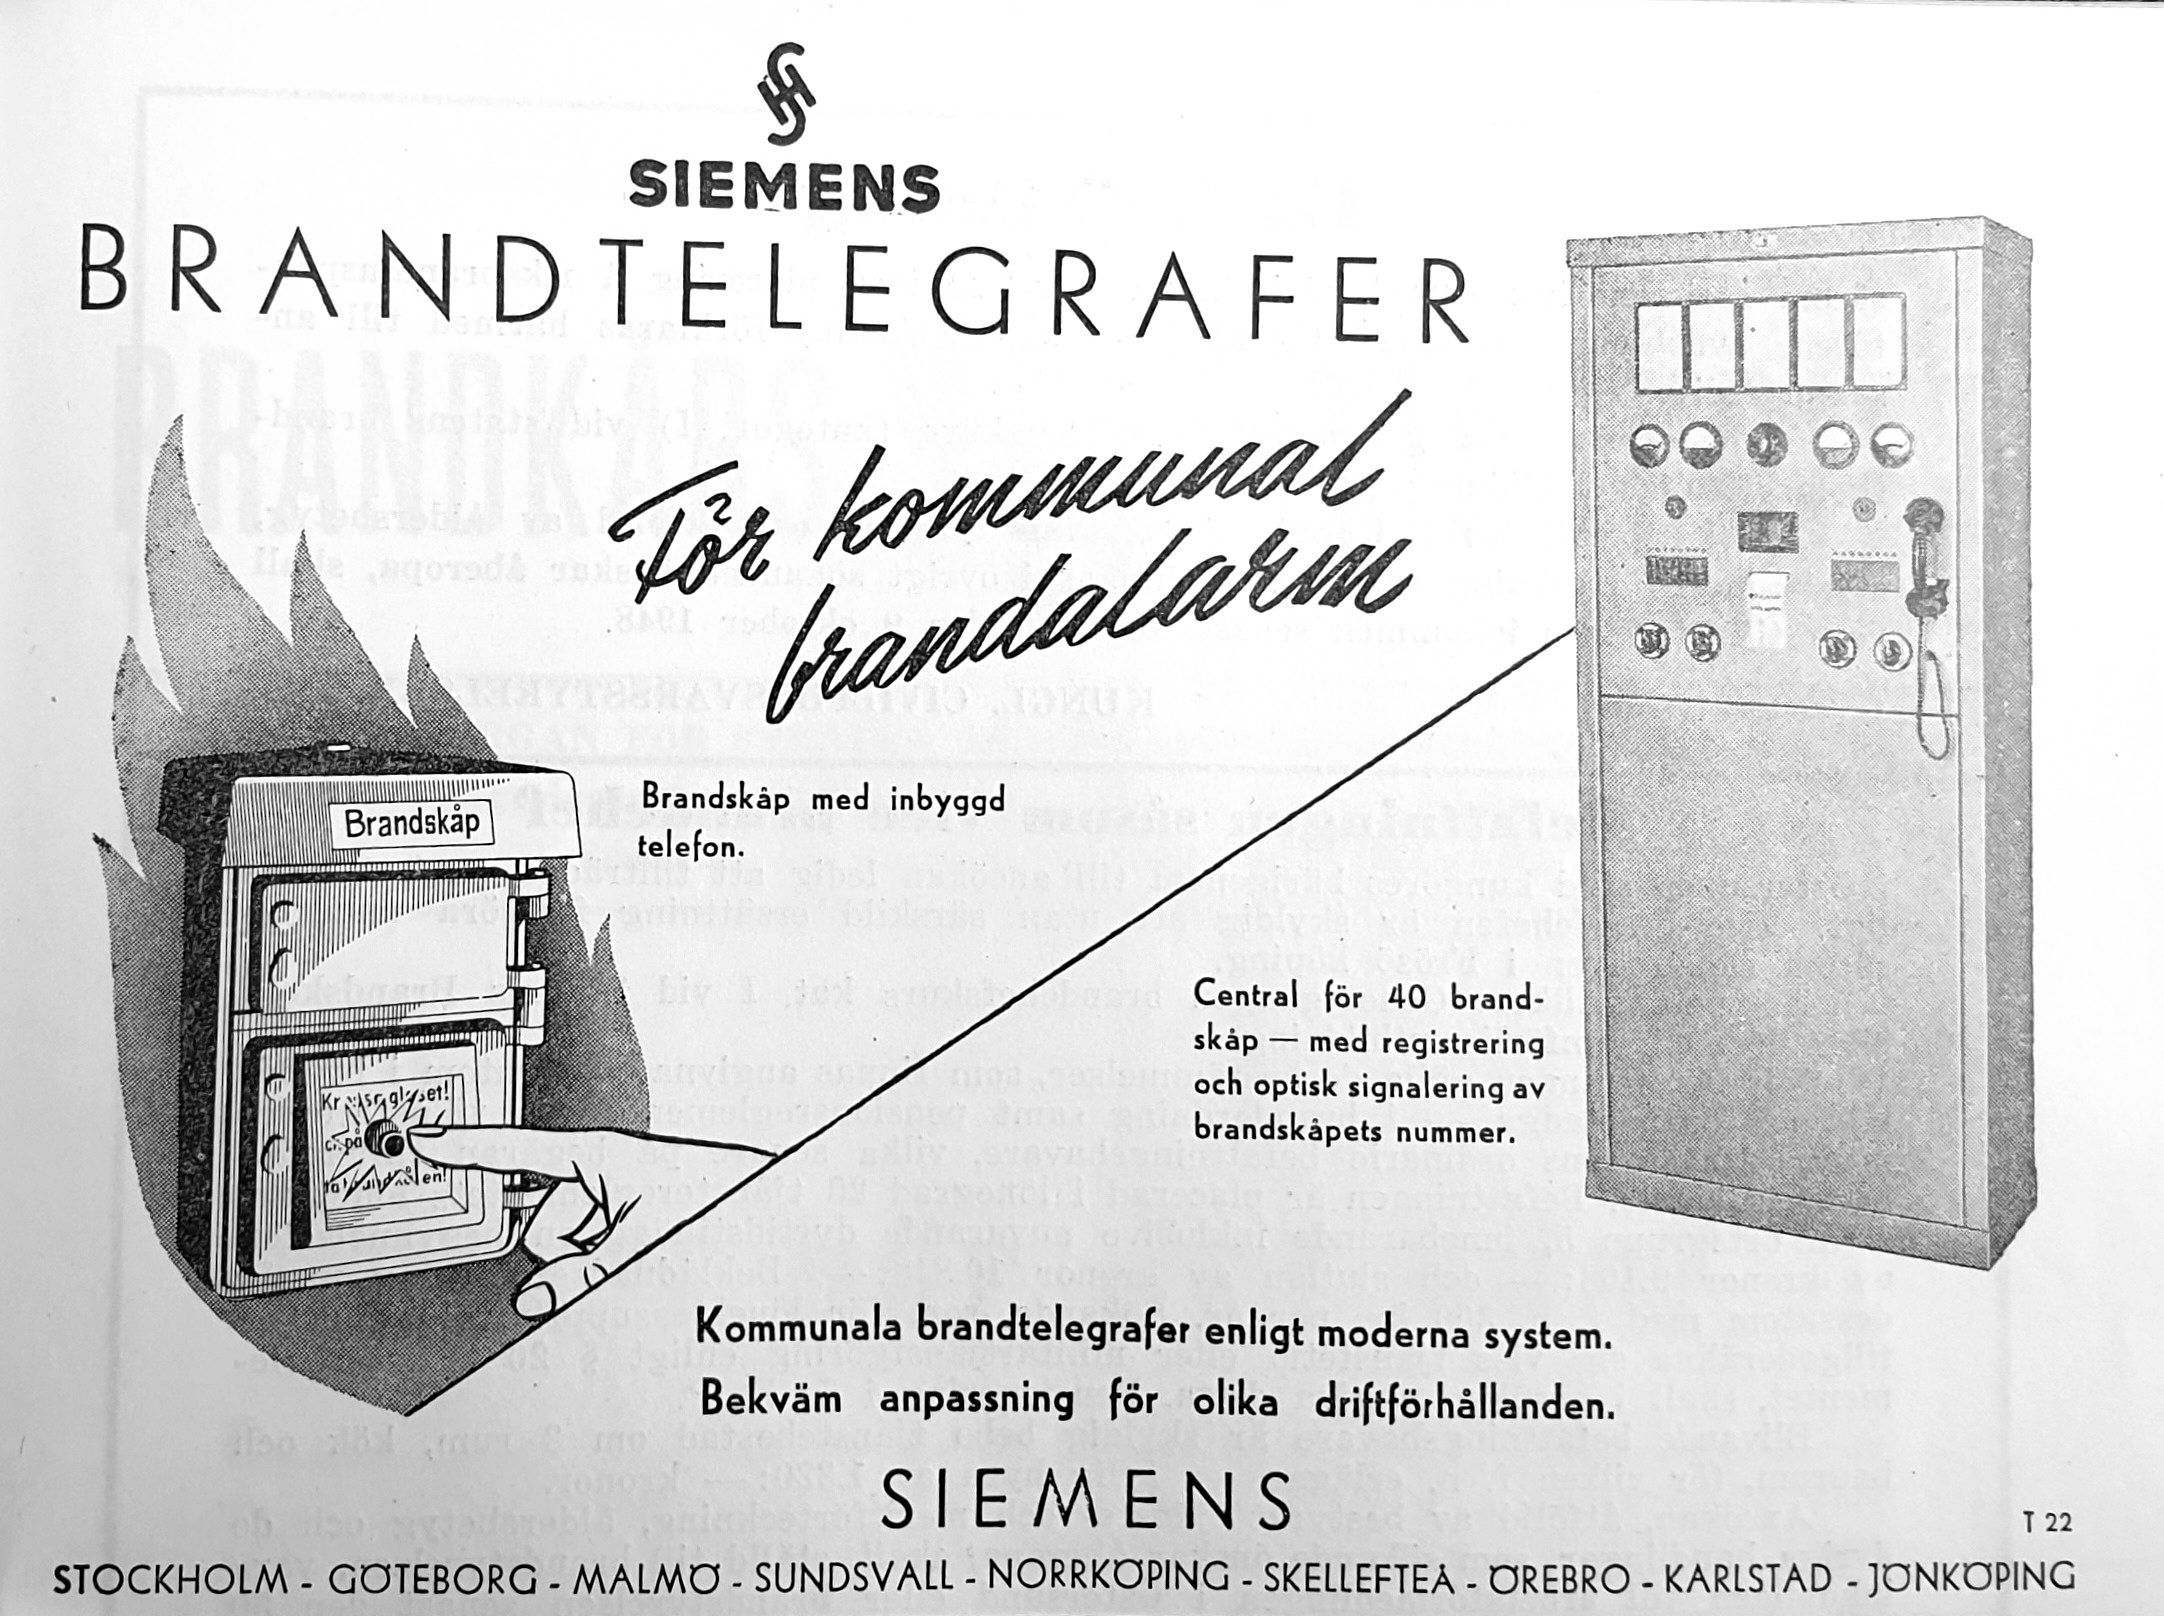 Siemens Brandtelegrafer